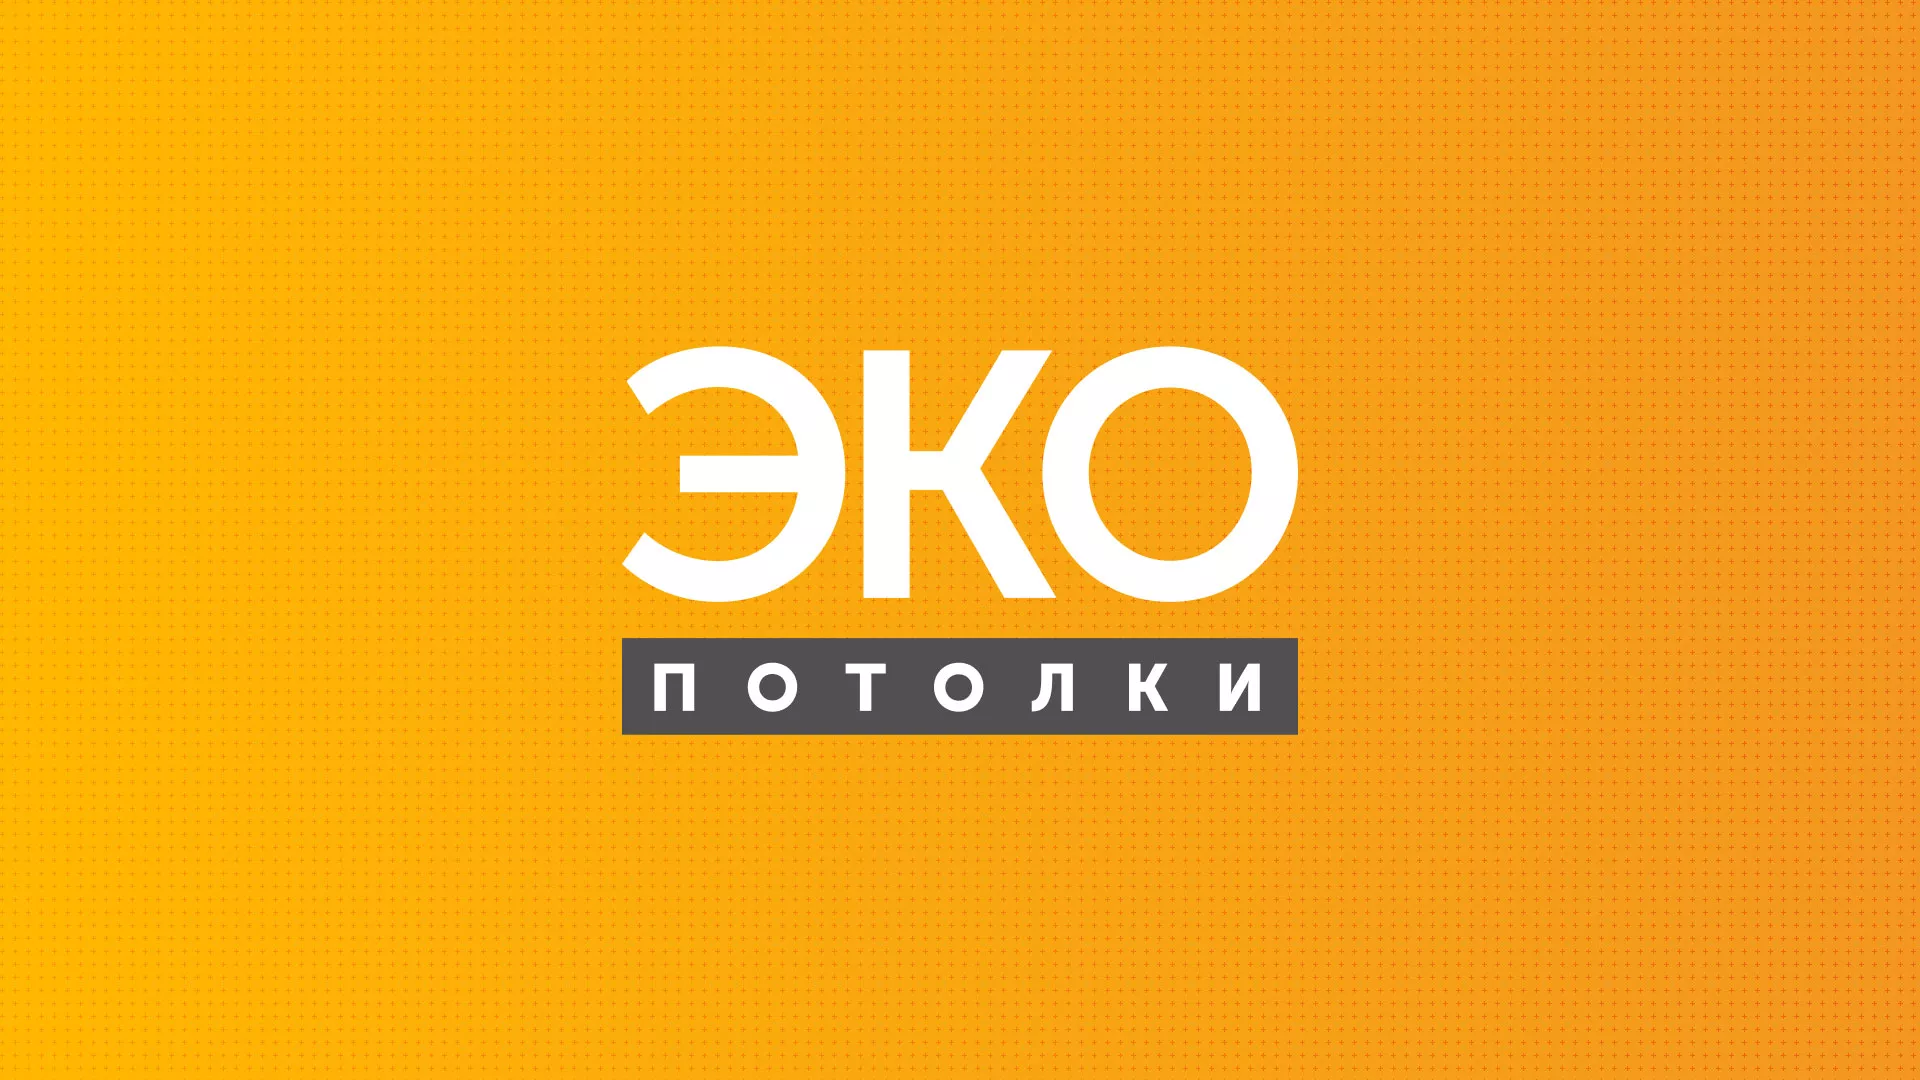 Разработка сайта по натяжным потолкам «Эко Потолки» в Зеленокумске